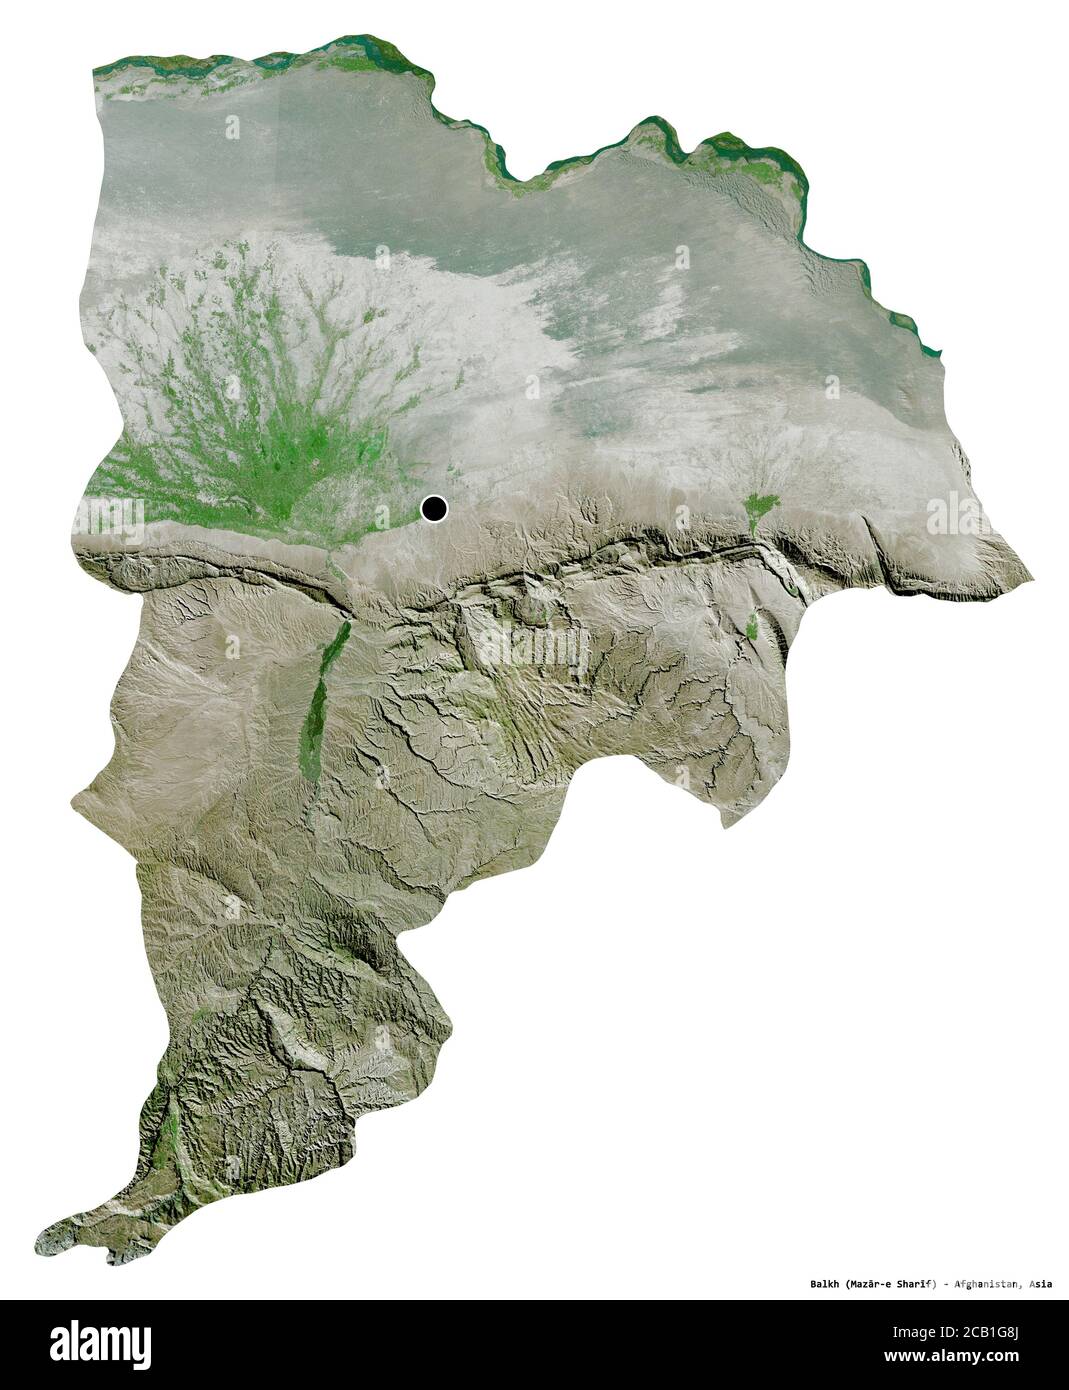 Forma di Balkh, provincia dell'Afghanistan, con la sua capitale isolata su sfondo bianco. Immagini satellitari. Rendering 3D Foto Stock